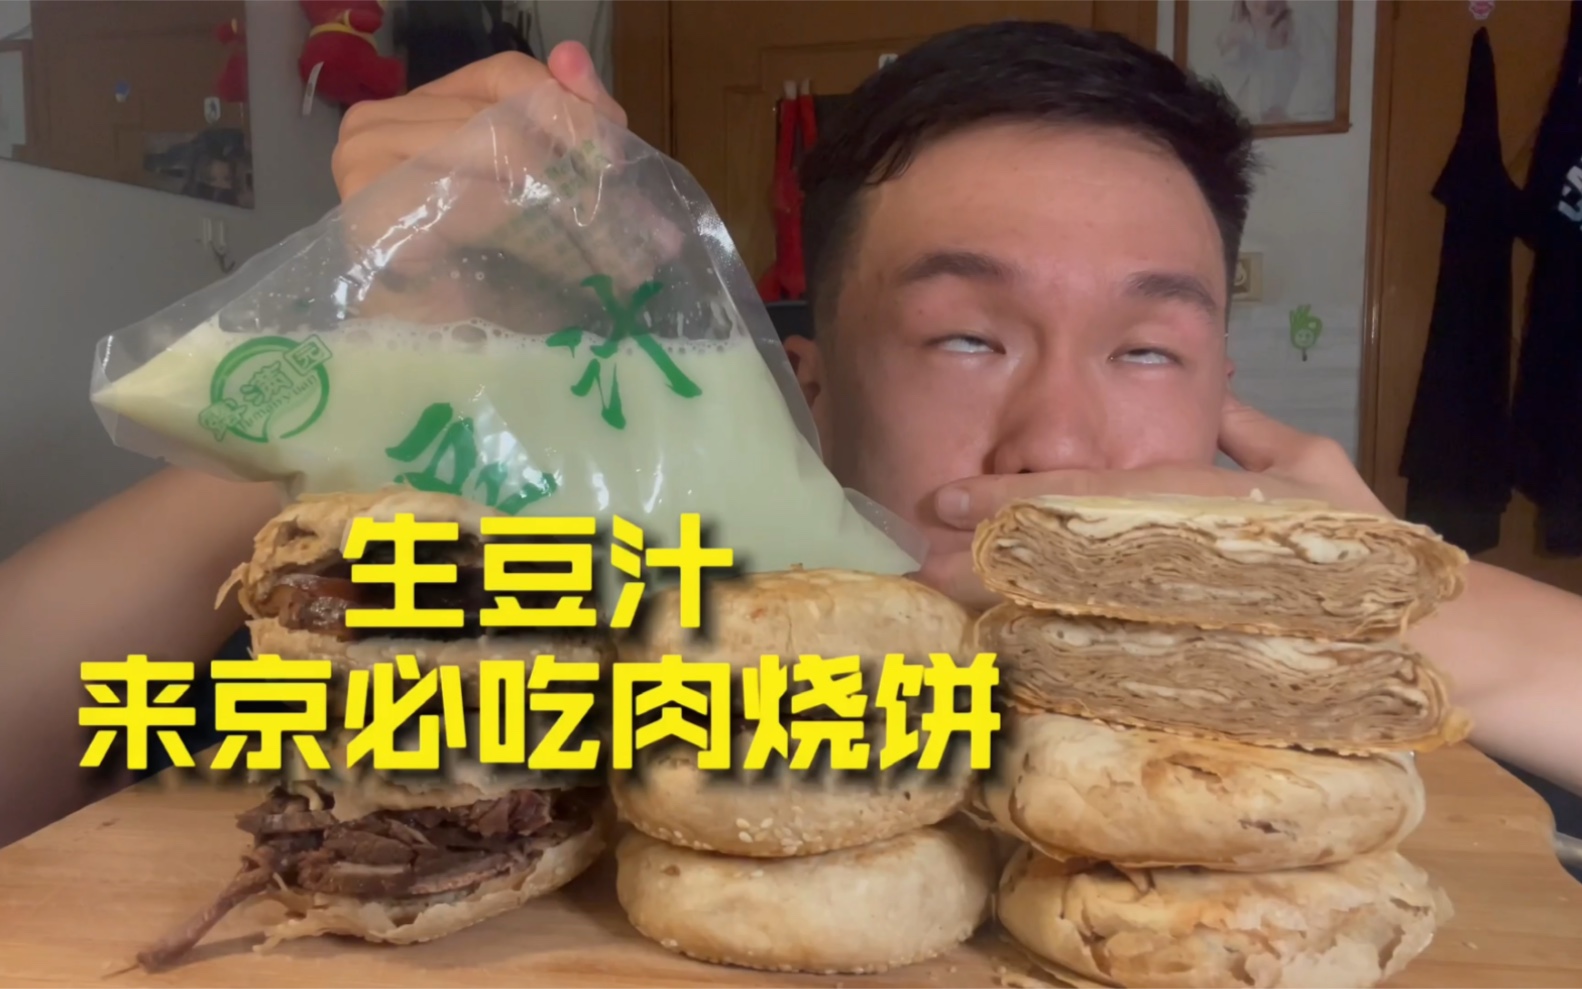 这肉烧饼在北京独一份 长这么大第一次体验生豆汁 难忘的经历